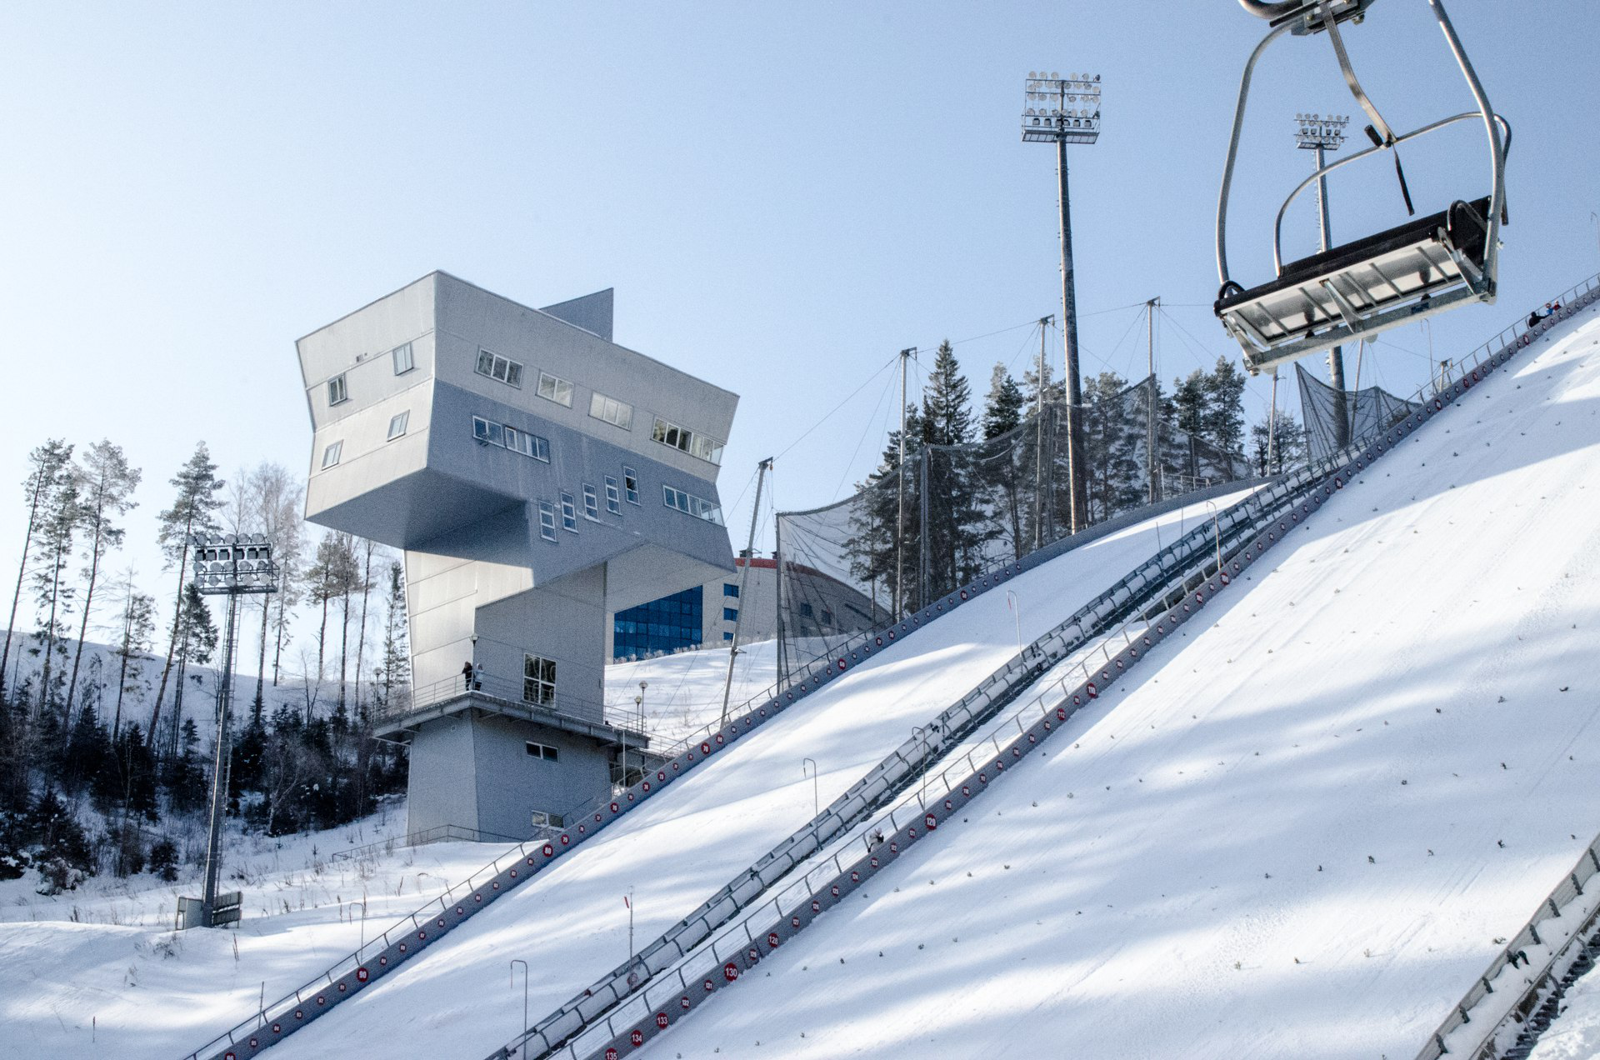 Впервые сборная Норвегии проведет учебно-тренировочные сборы по прыжкам на лыжах с трамплина в России